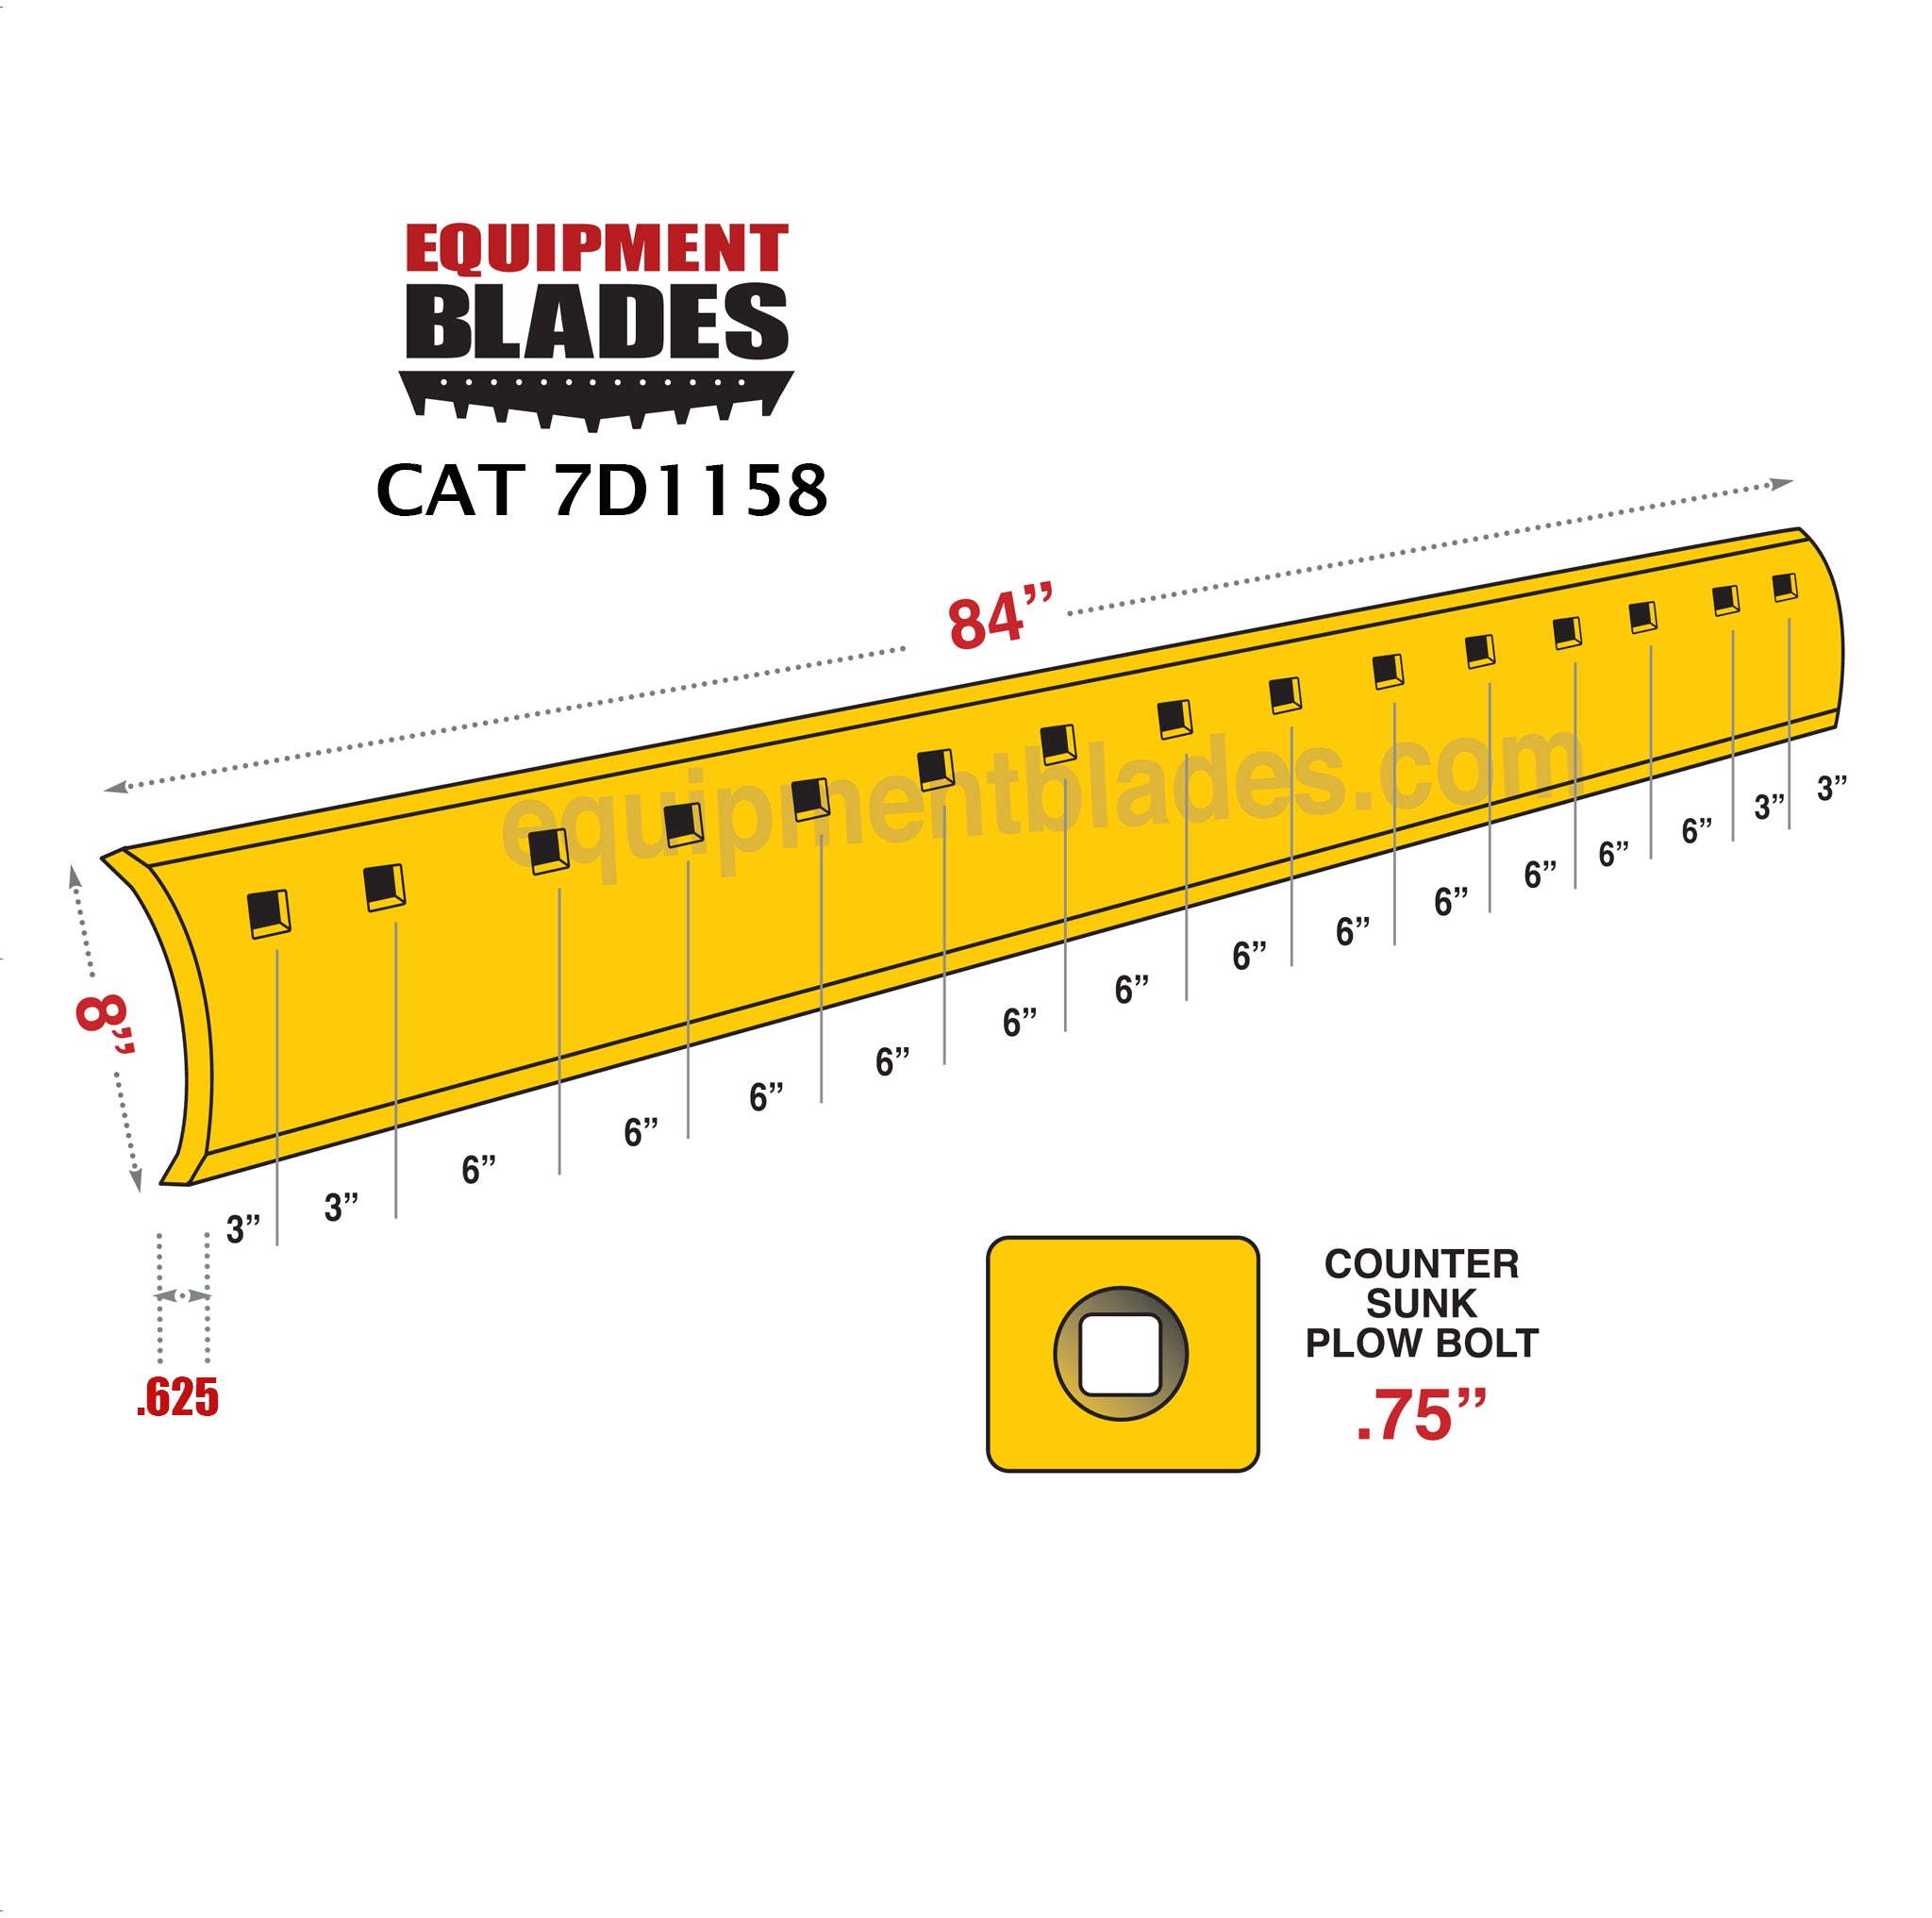 CAT 7D1158 – Equipment Blades Inc